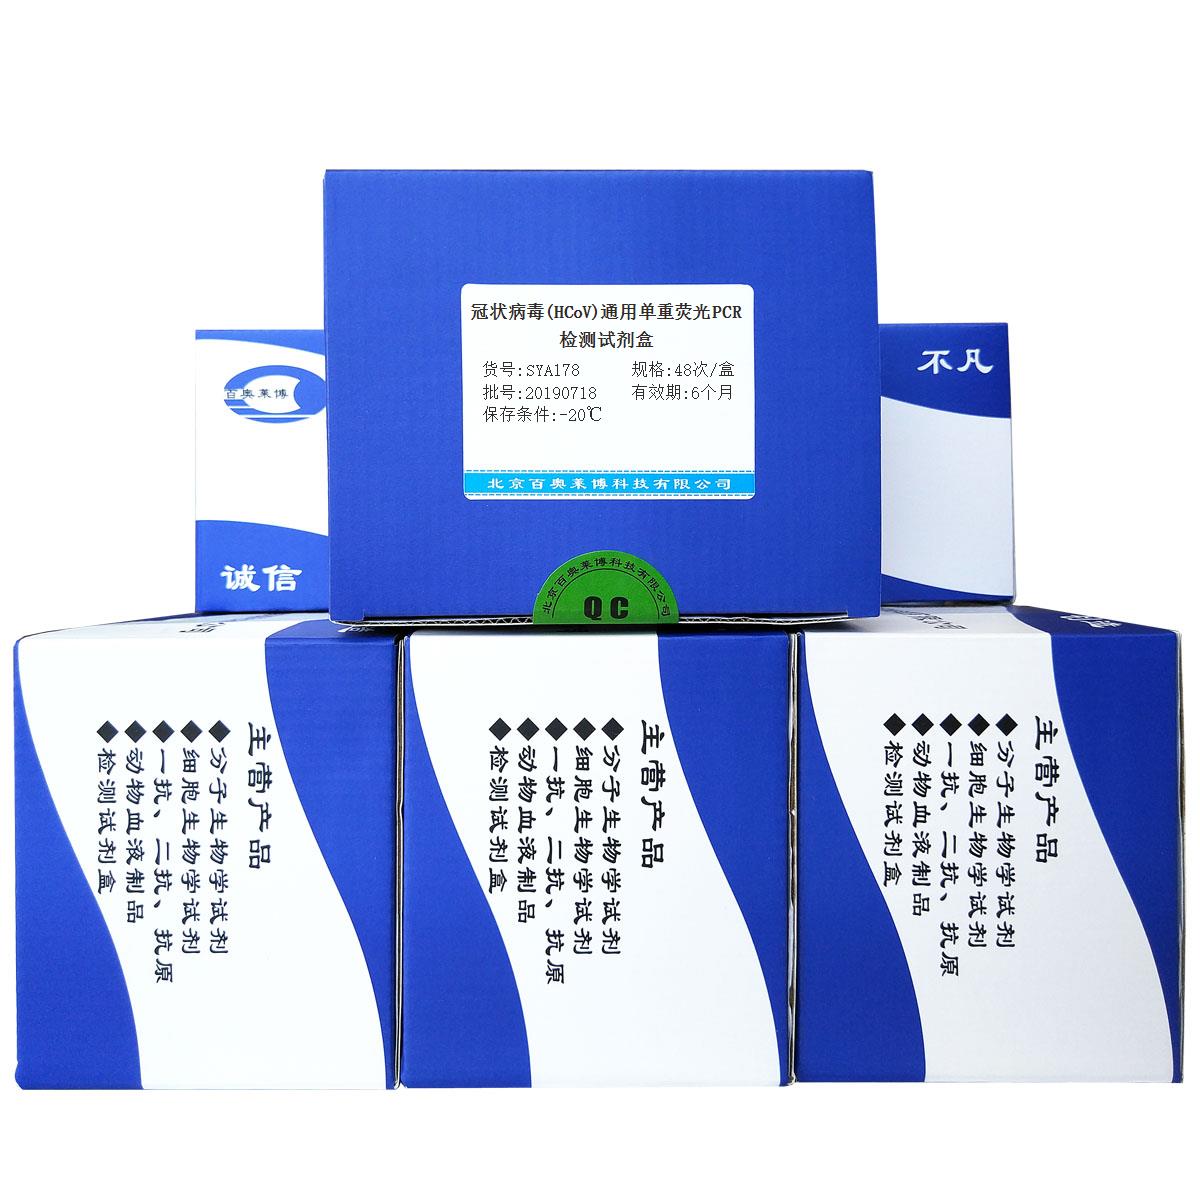 冠状病毒(HCoV)通用单重荧光PCR检测试剂盒